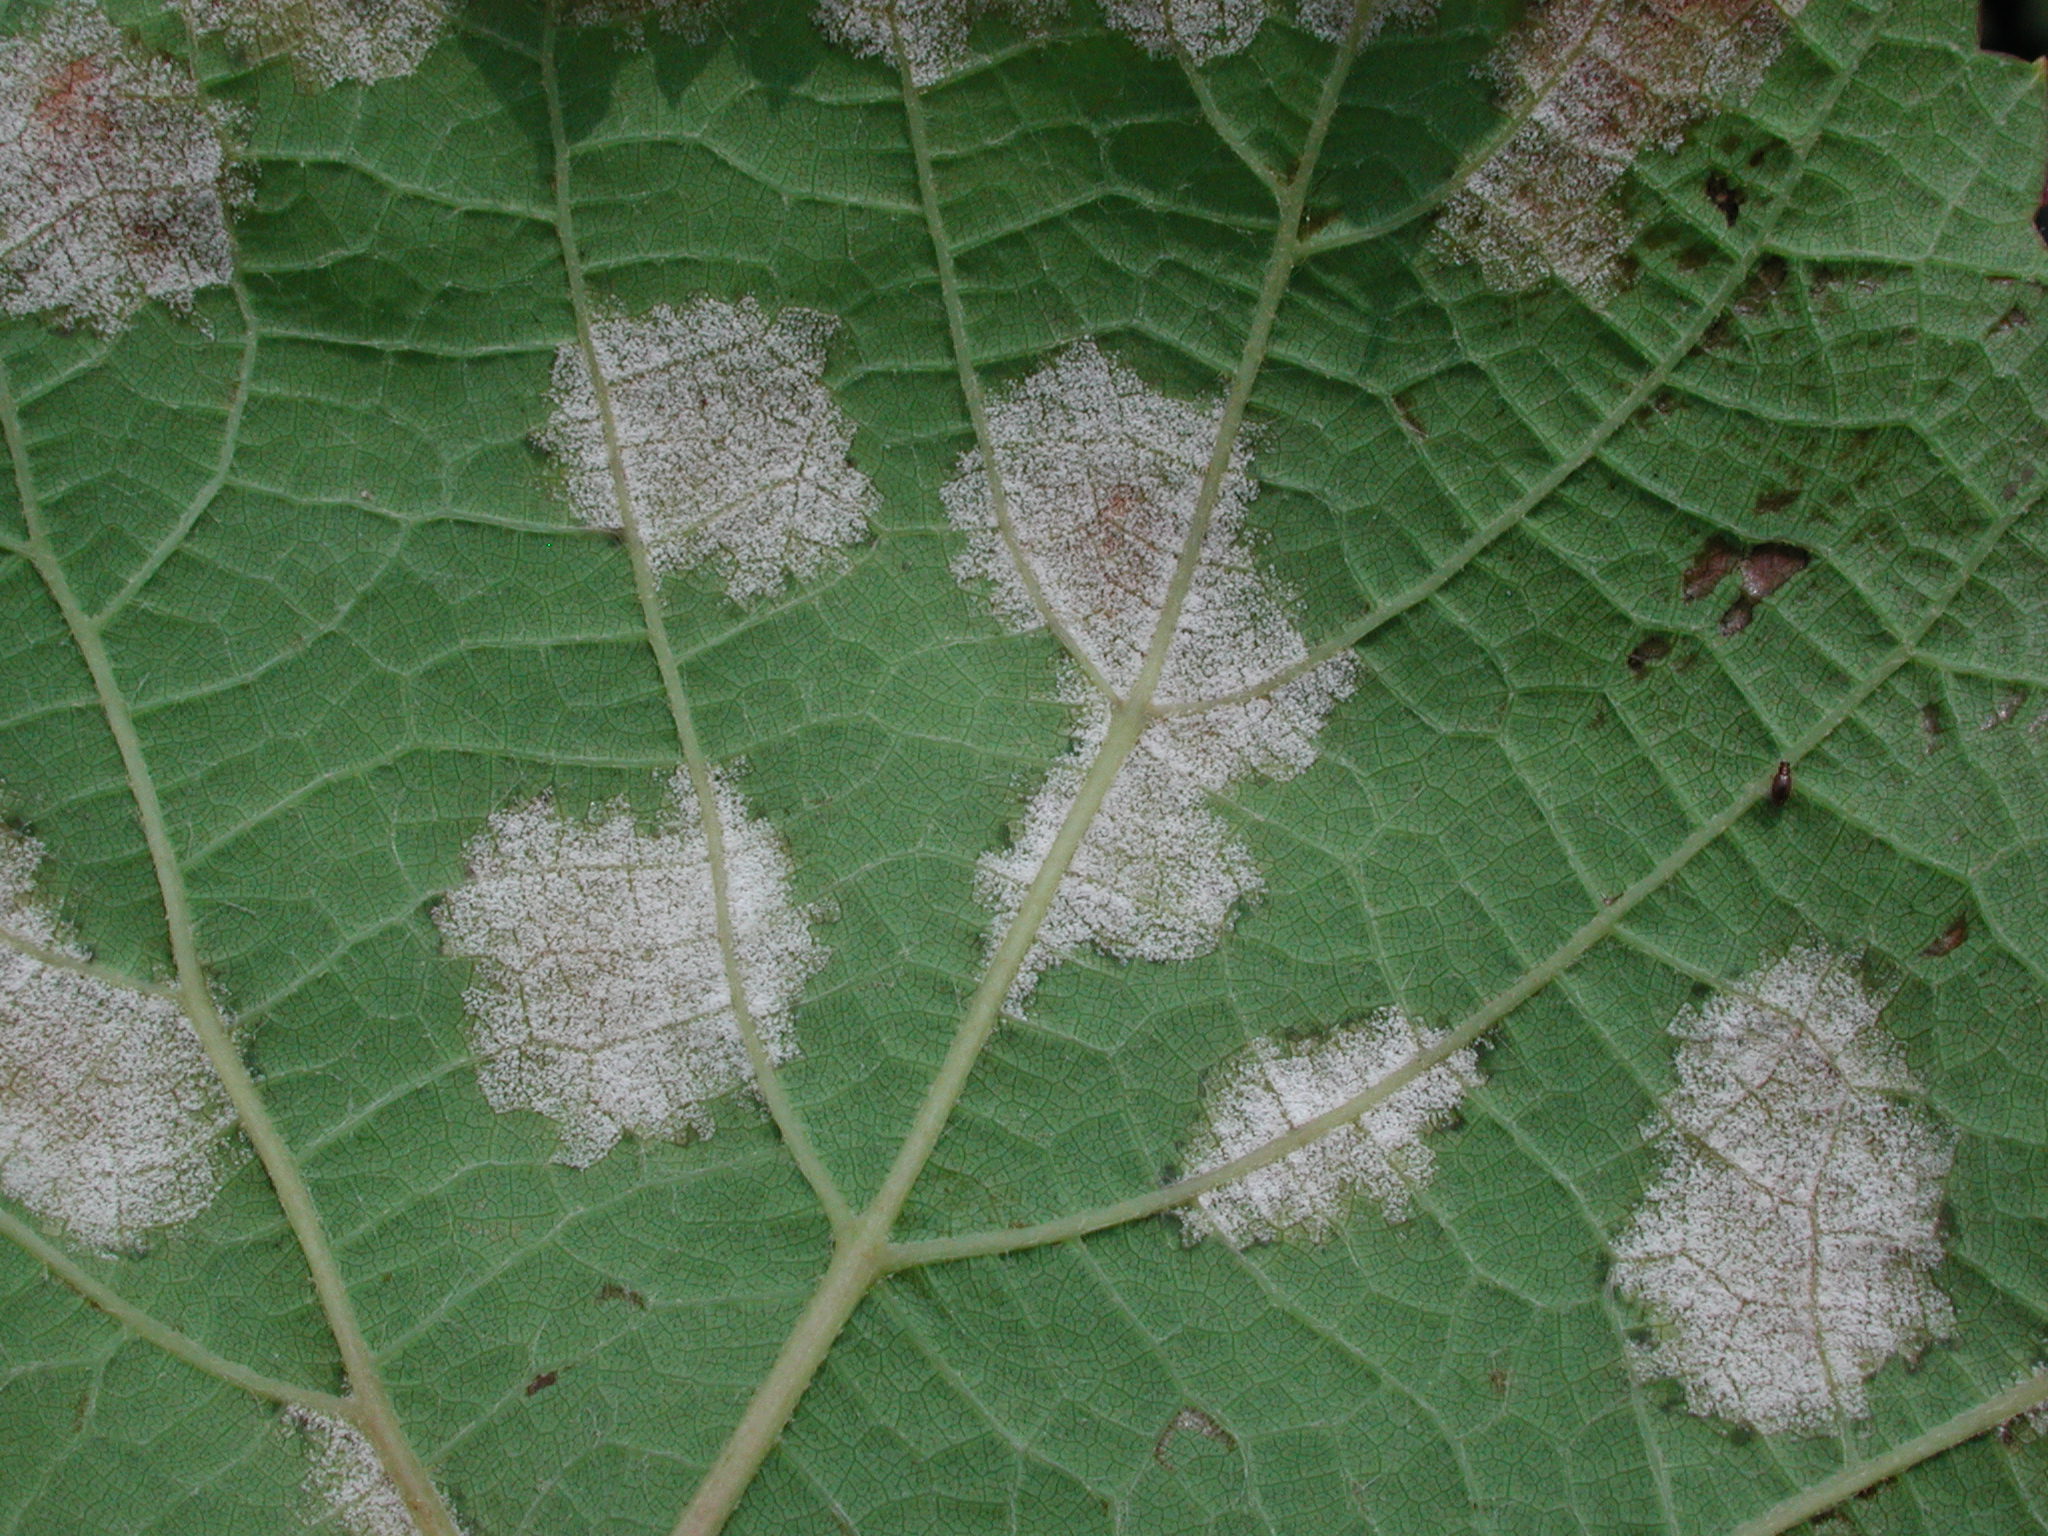 葡萄露菌病在受害葉背產生白色黴狀物